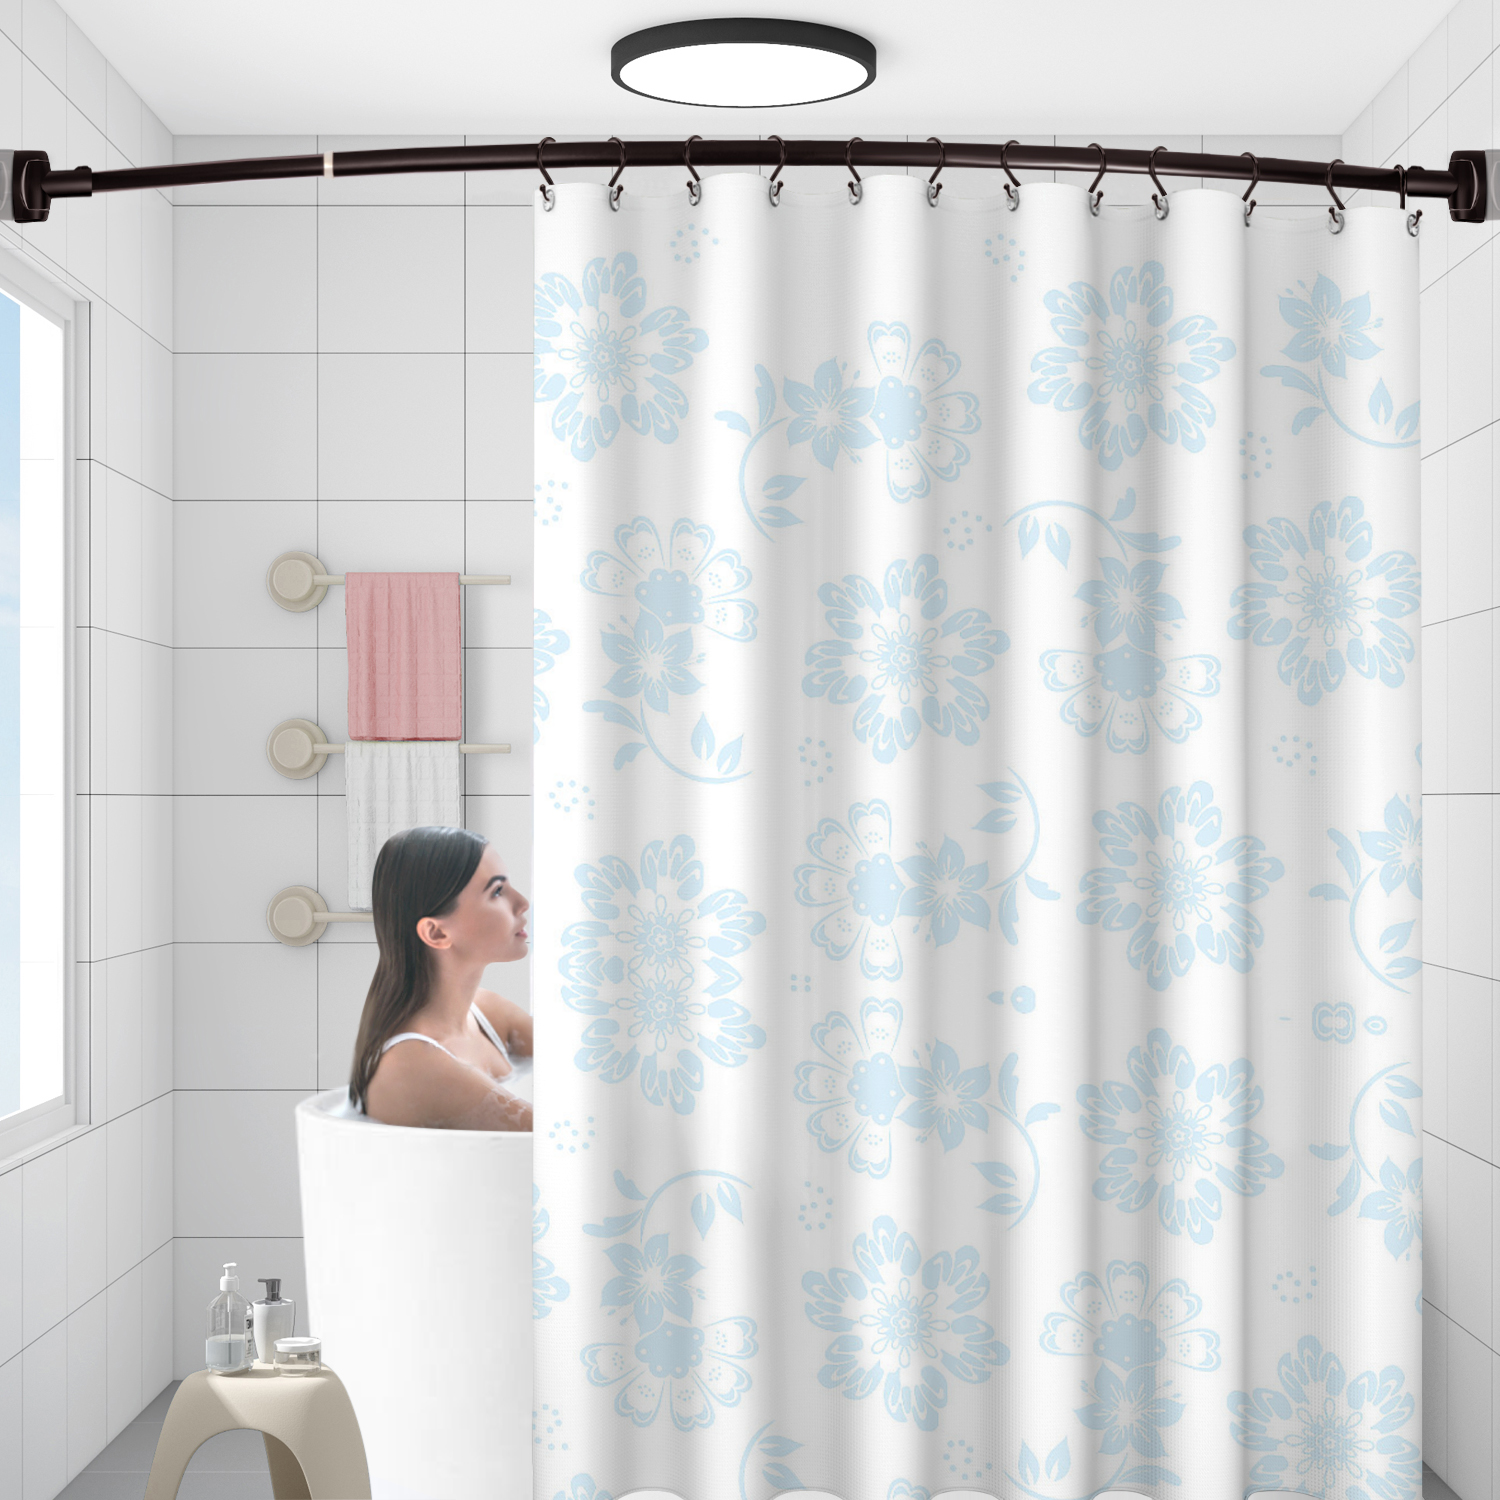 Venta al por mayor de bronce estirable 304 inoxidable curvado baño bañera esquina cortina de ducha estante (50 '-72 ')